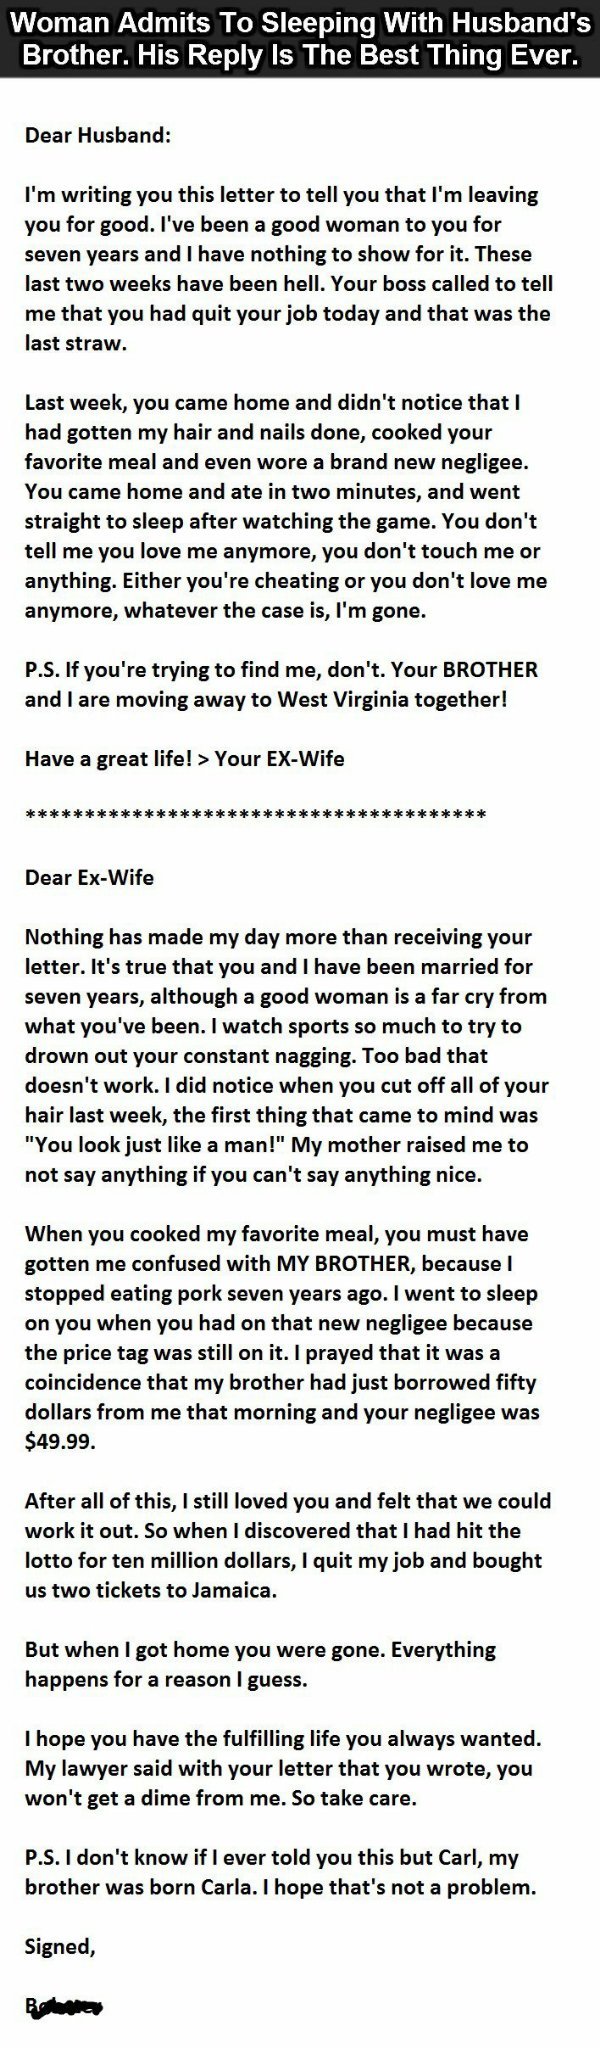 Poor ex-wife.. - meme